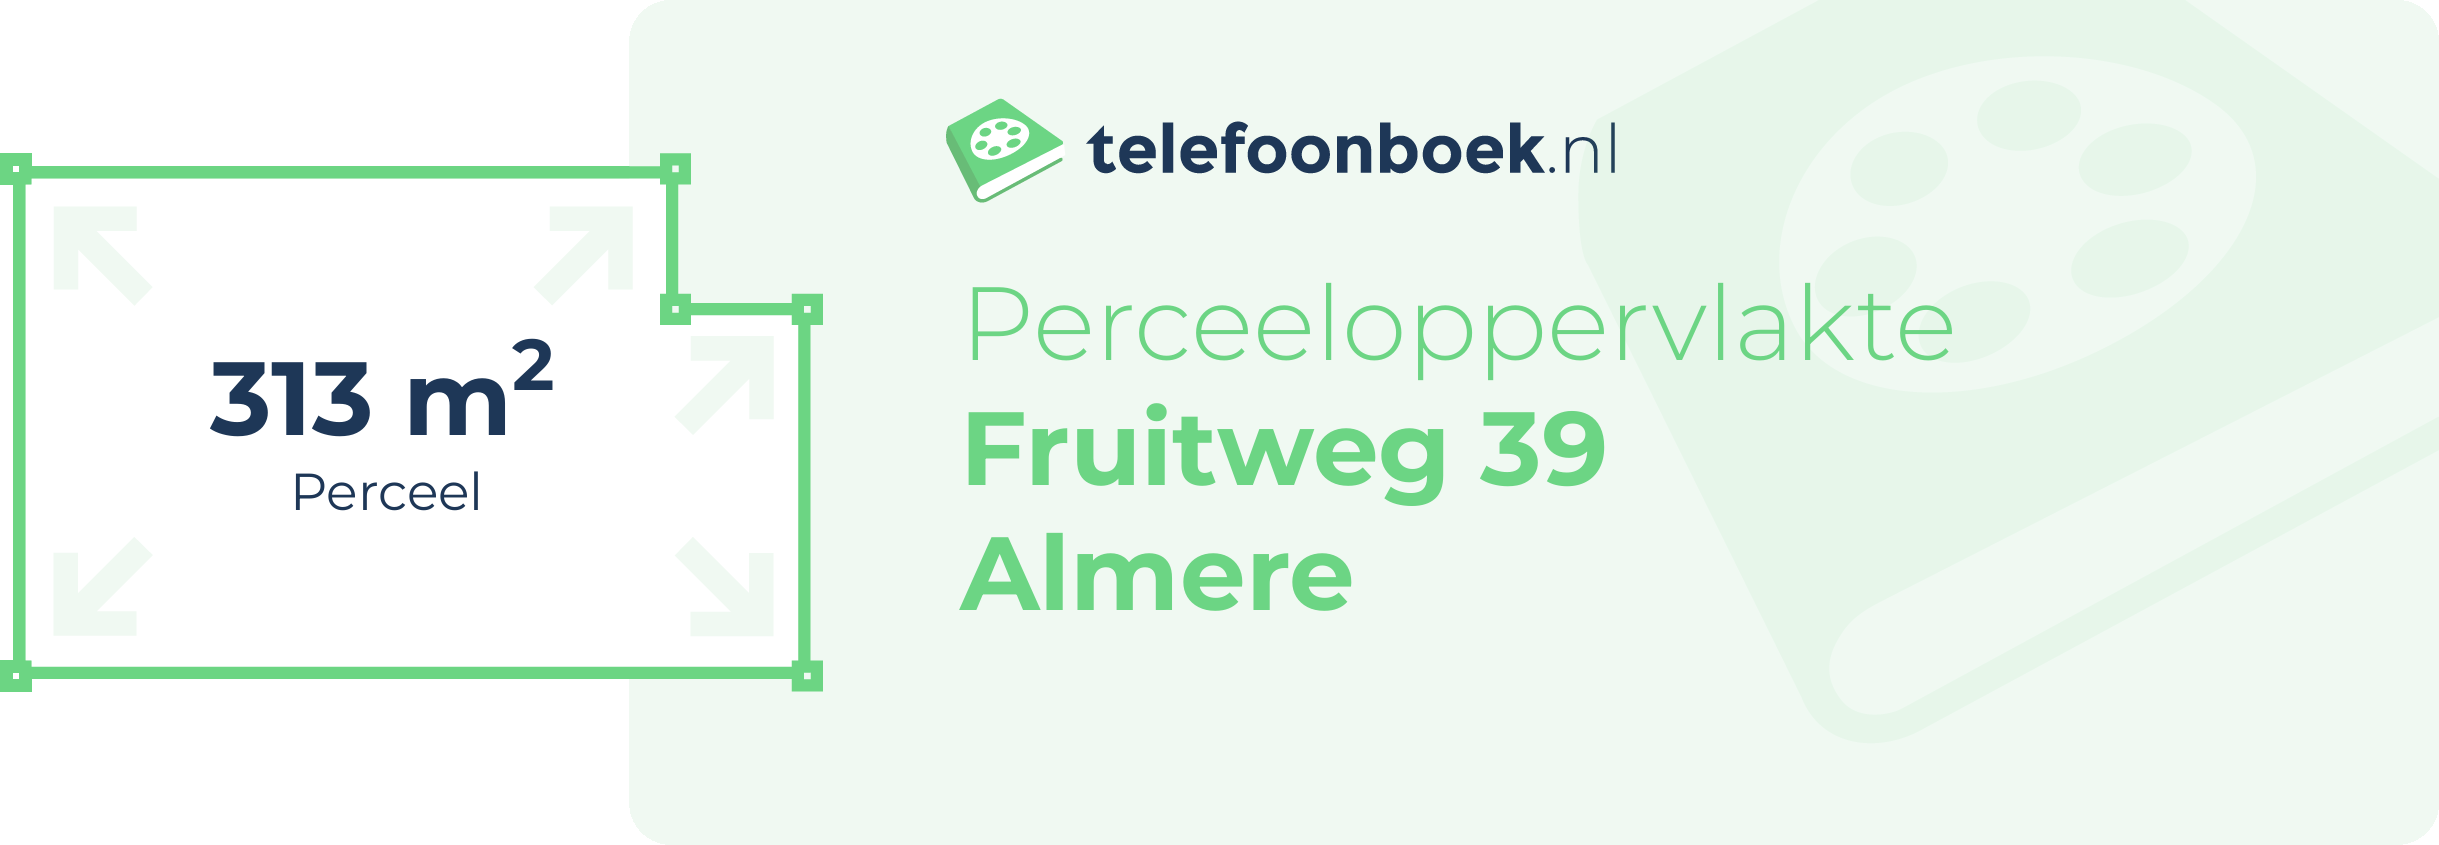 Perceeloppervlakte Fruitweg 39 Almere